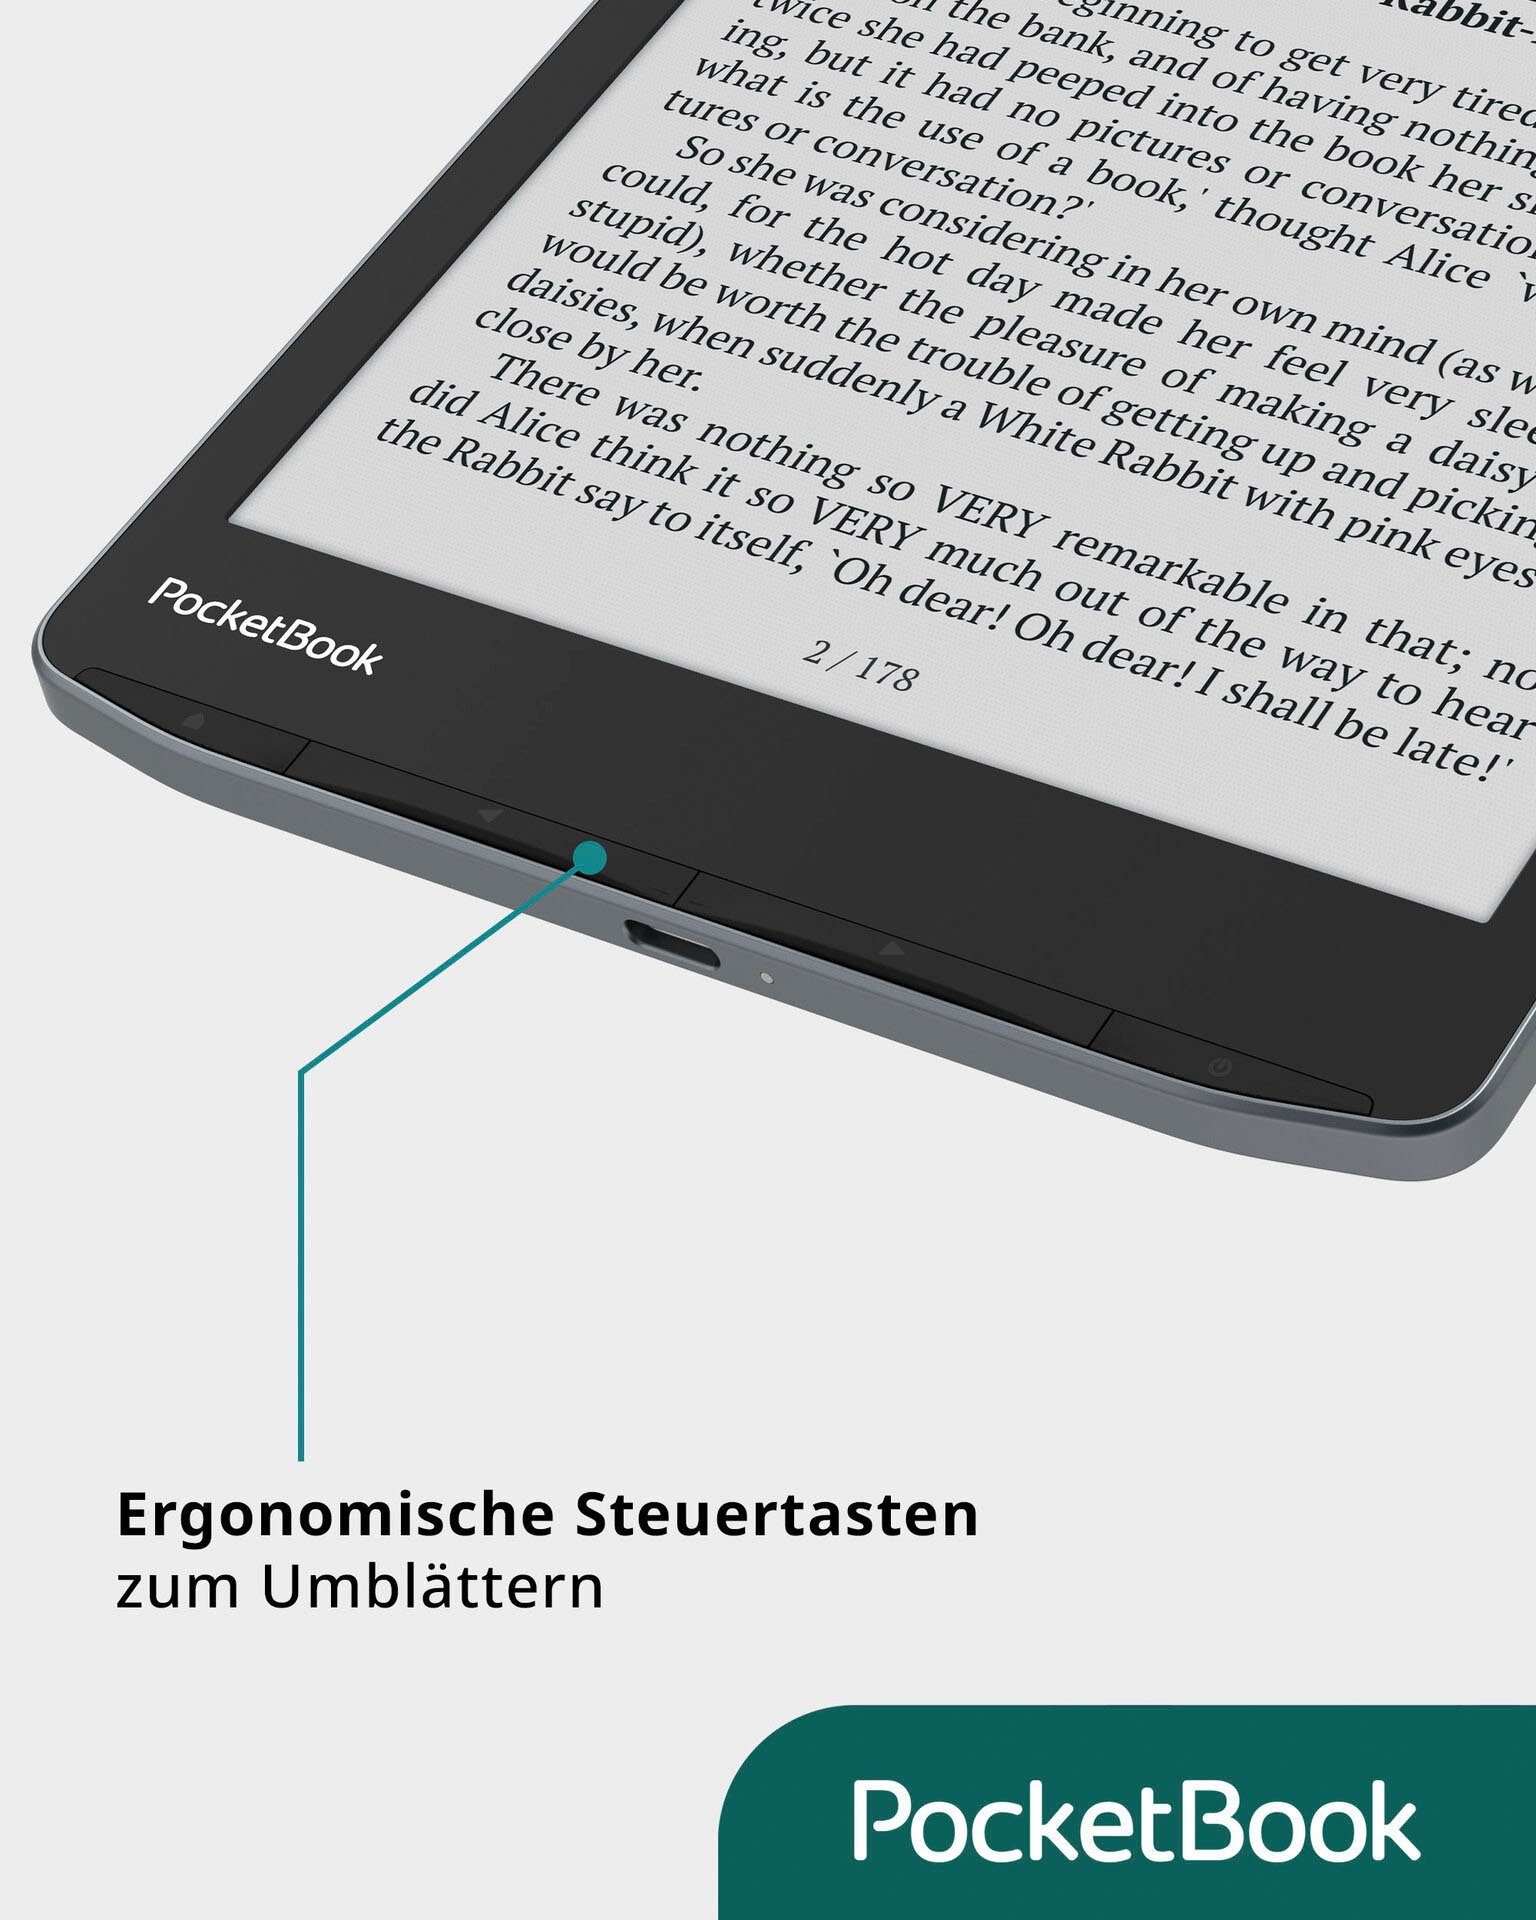 PocketBook InkPad Color 3 mit Bluetooth-Schnittstelle) 32 und (7,8", E-Book GB, Reader Lautsprecher E-Book